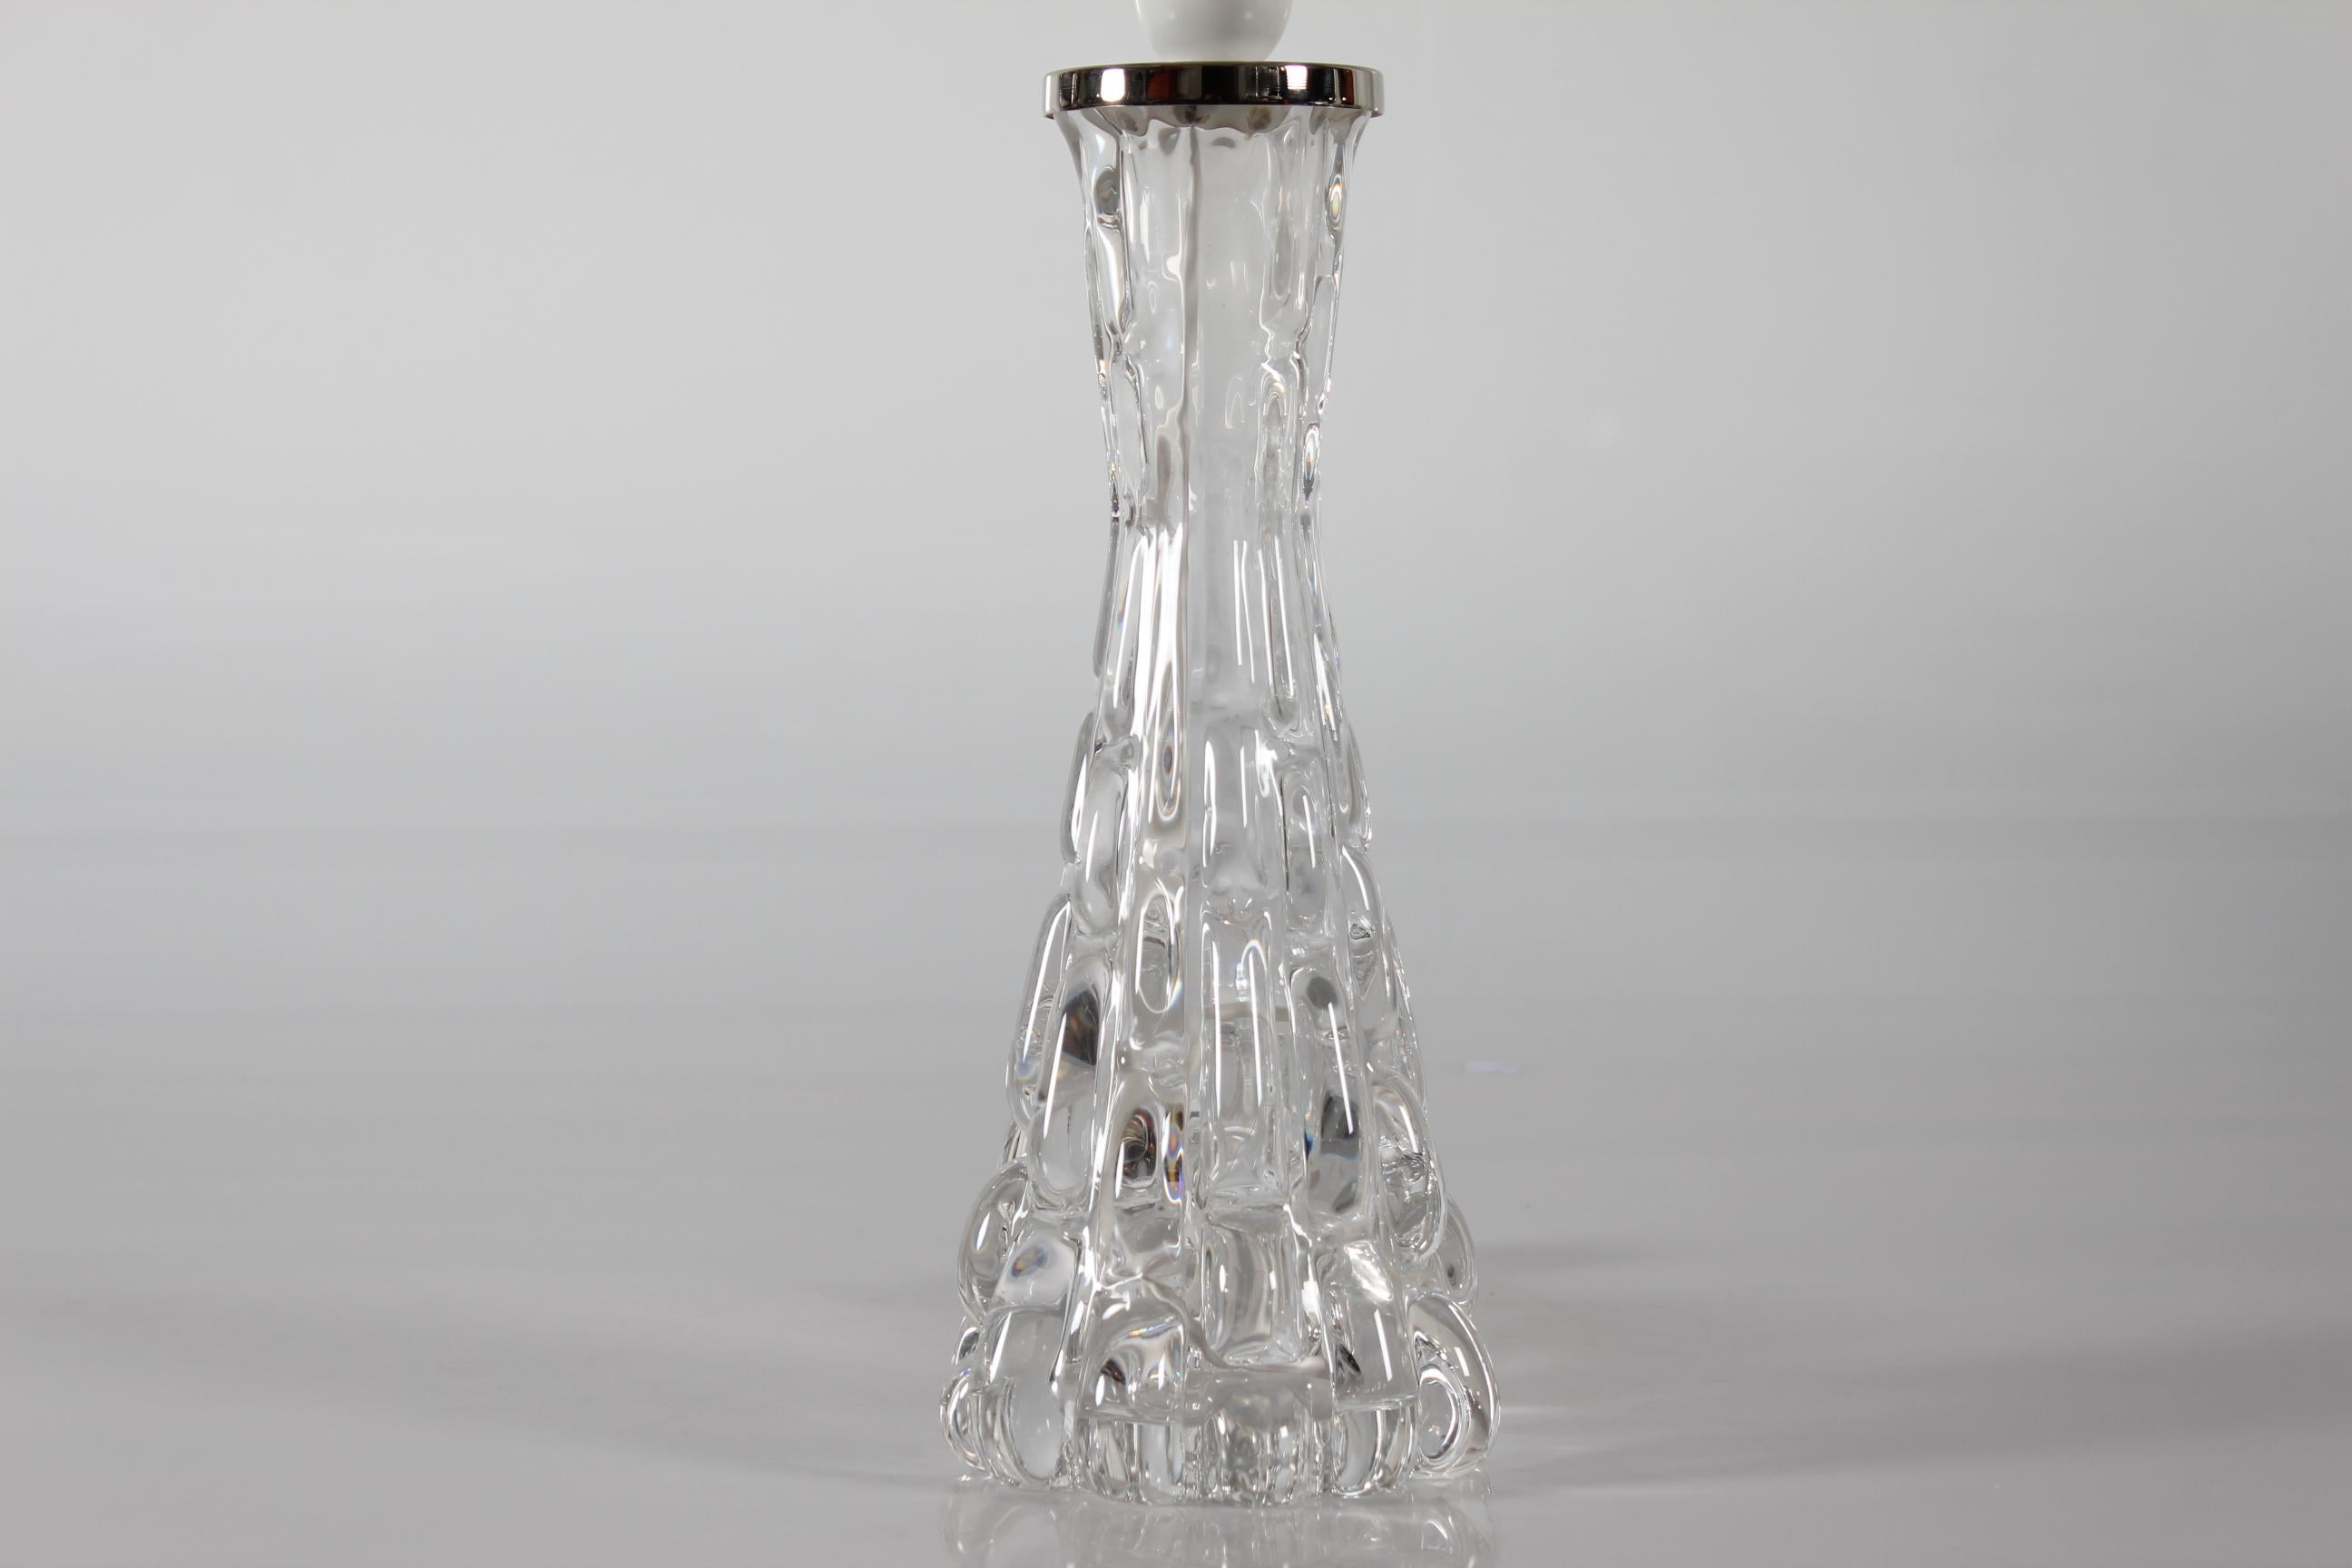 Carl Fagerlund Tischleuchte, hergestellt von Orrefors, Schweden in den 1960er Jahren. 

Der hohe und schlanke Lampenfuß ist aus klarem Glas gefertigt.

Dazu gehört auch ein neuer, in Dänemark entworfener Lampenschirm.
Der Schirm ist aus gewebtem